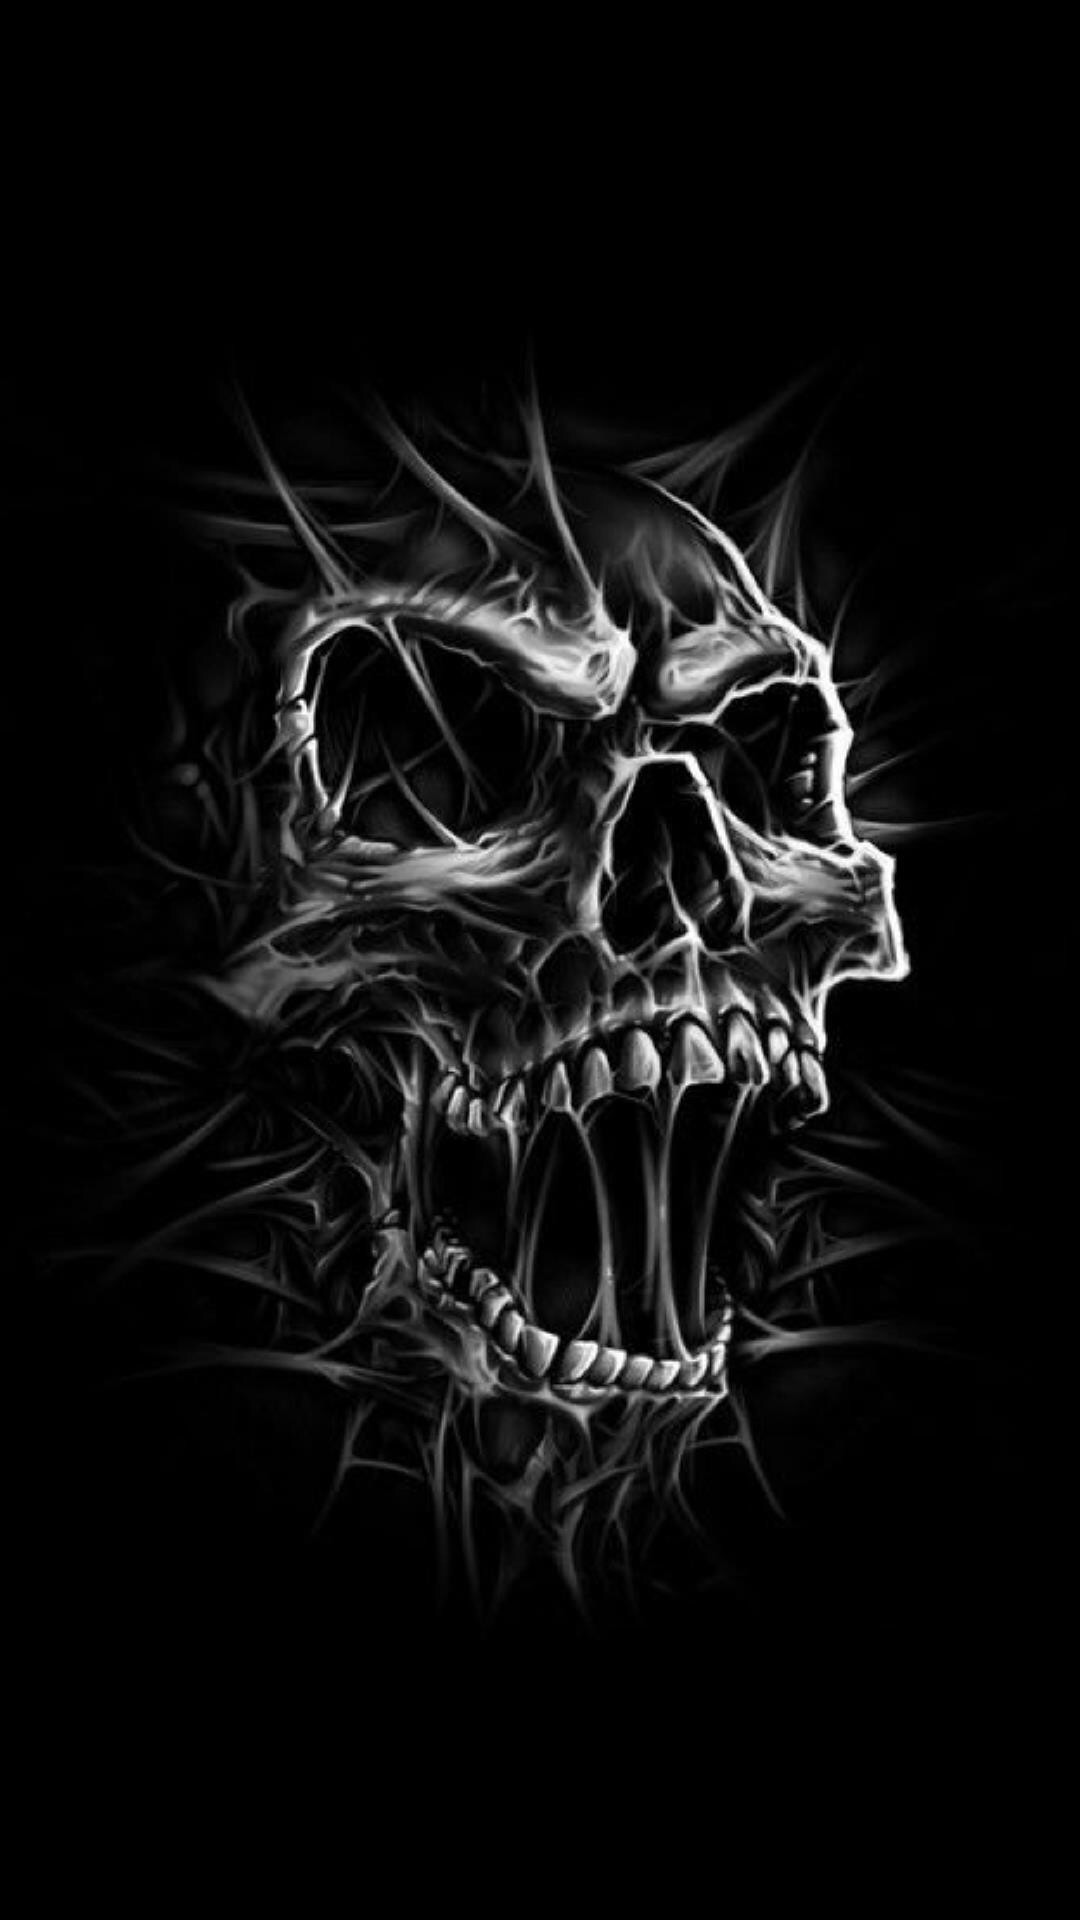 1080x1920 unusual sky drawing: "DEATH Skull" by Adrian Balderrama